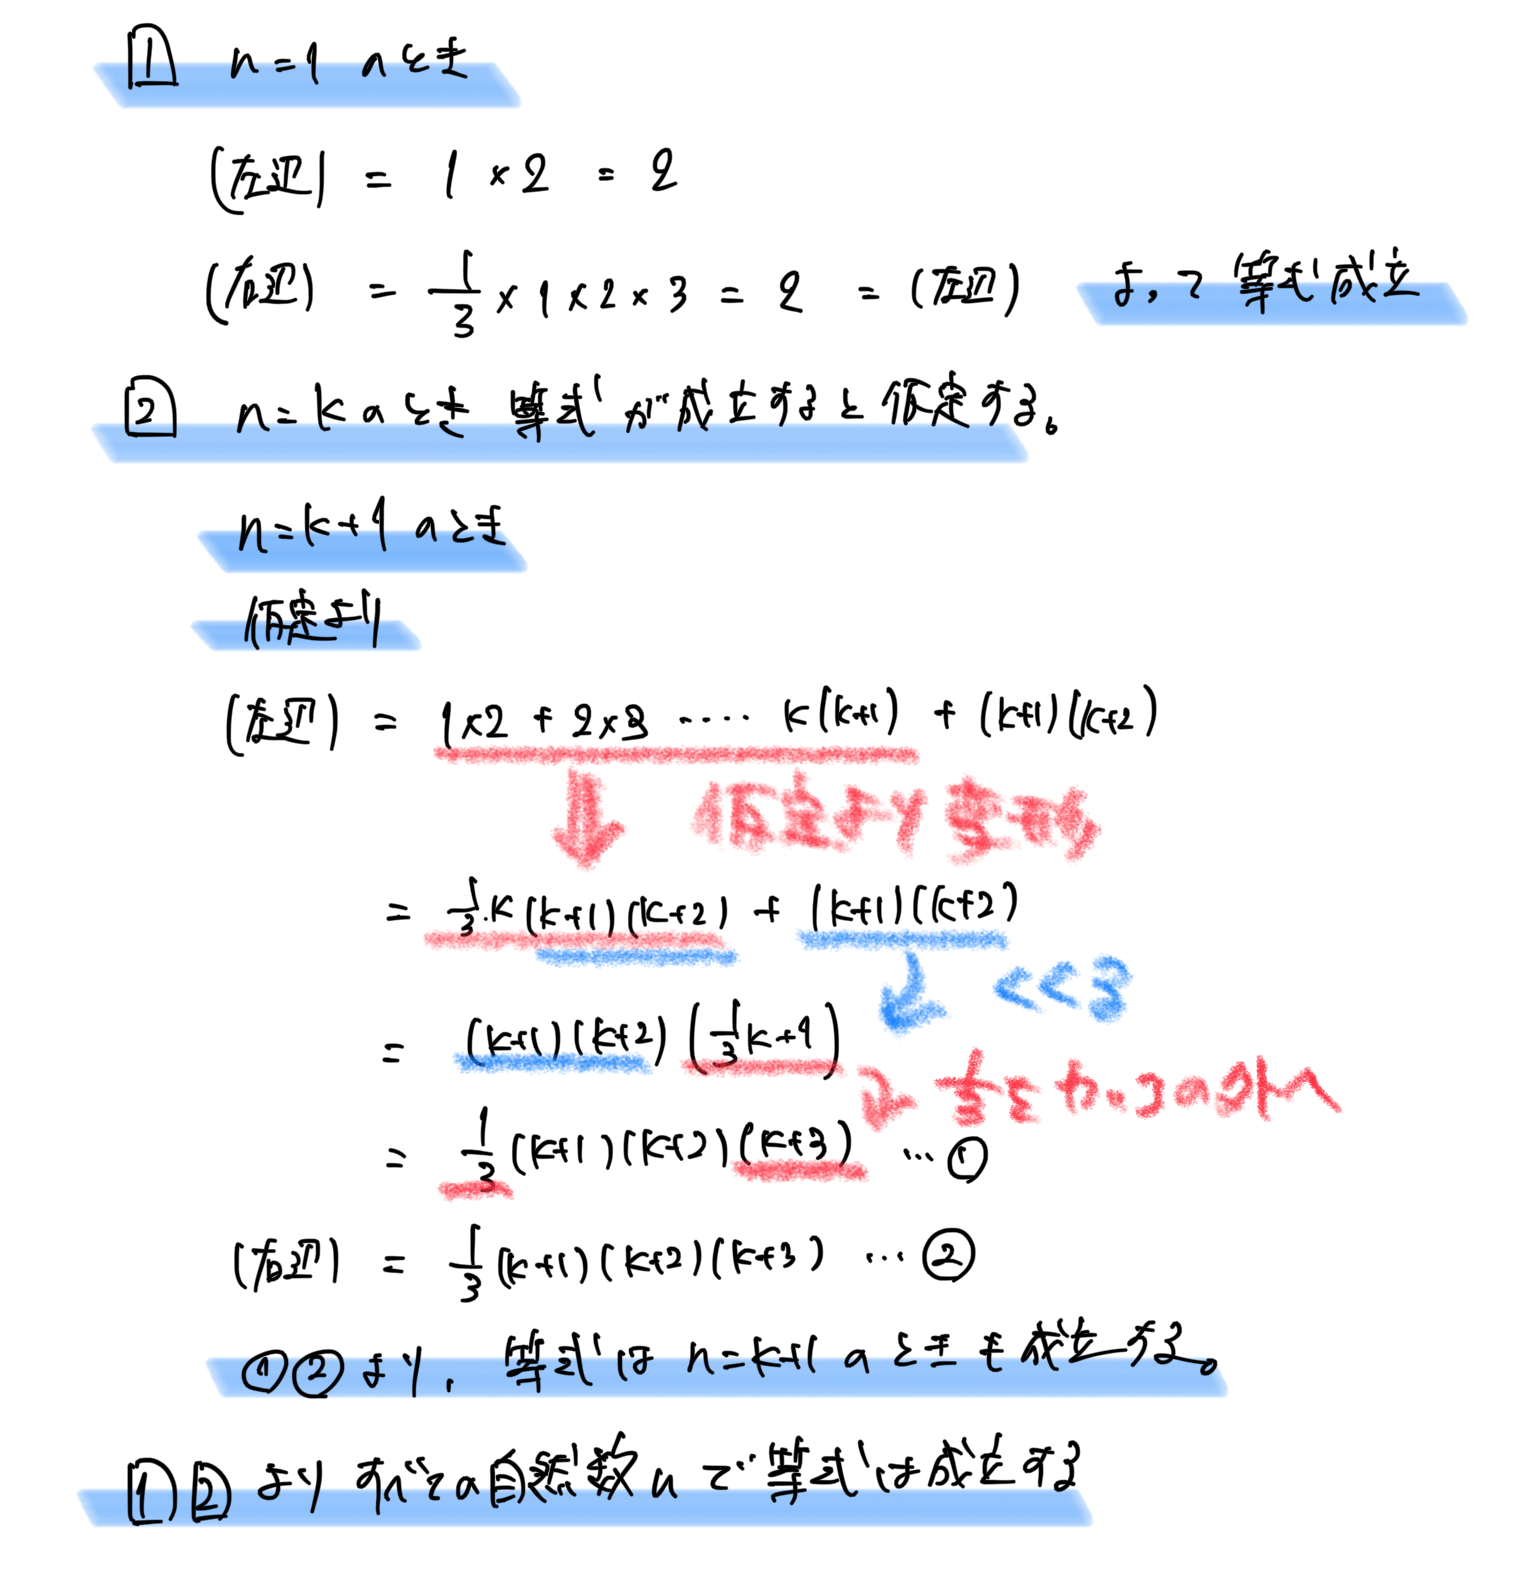 数学的帰納法による等式の証明